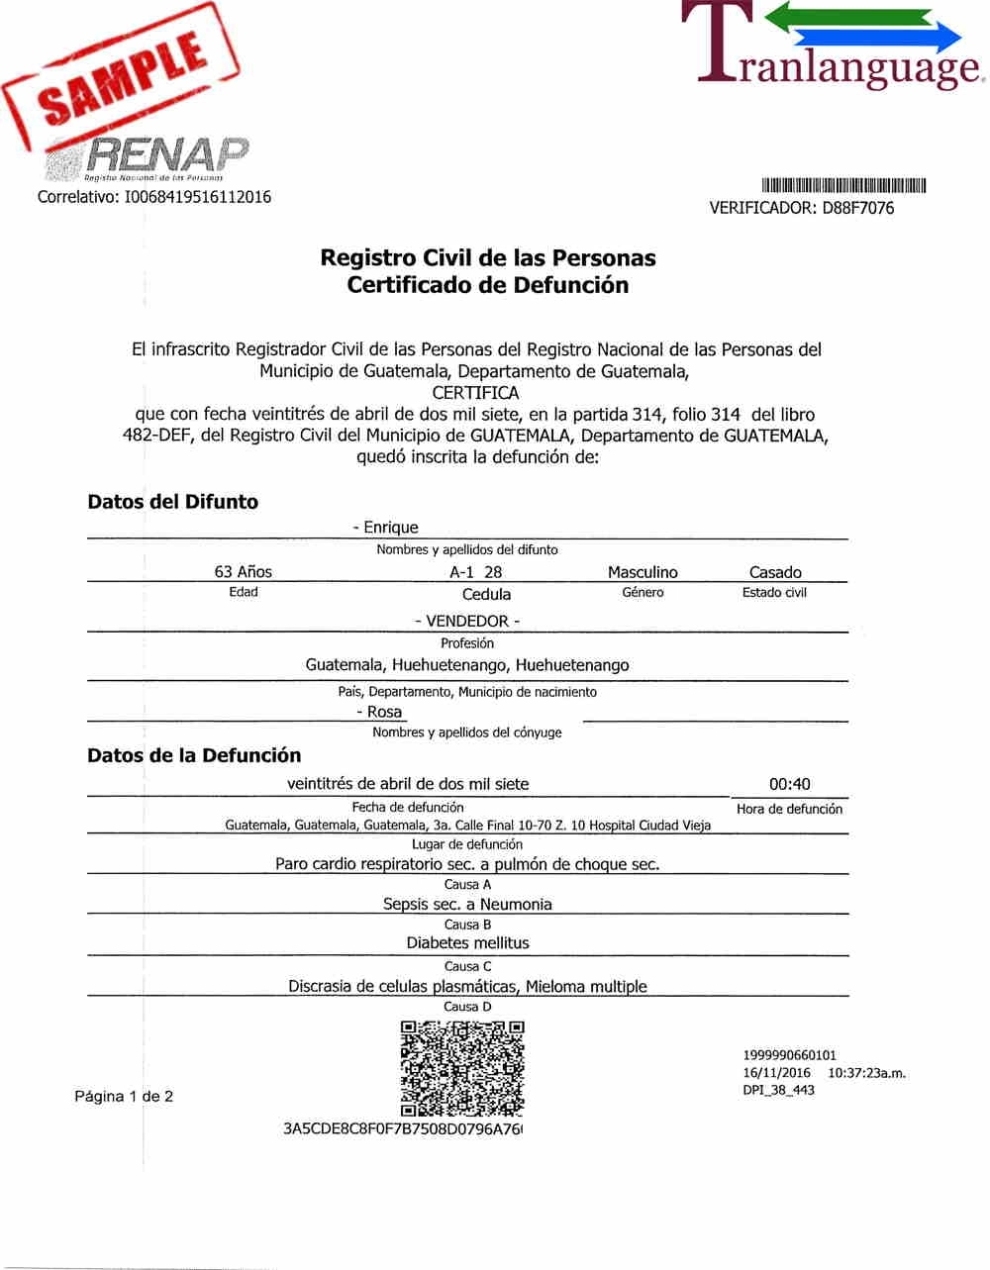 Death Certificate Guatemala - Tranlanguage - Certified Translations for Death Certificate Translation Template